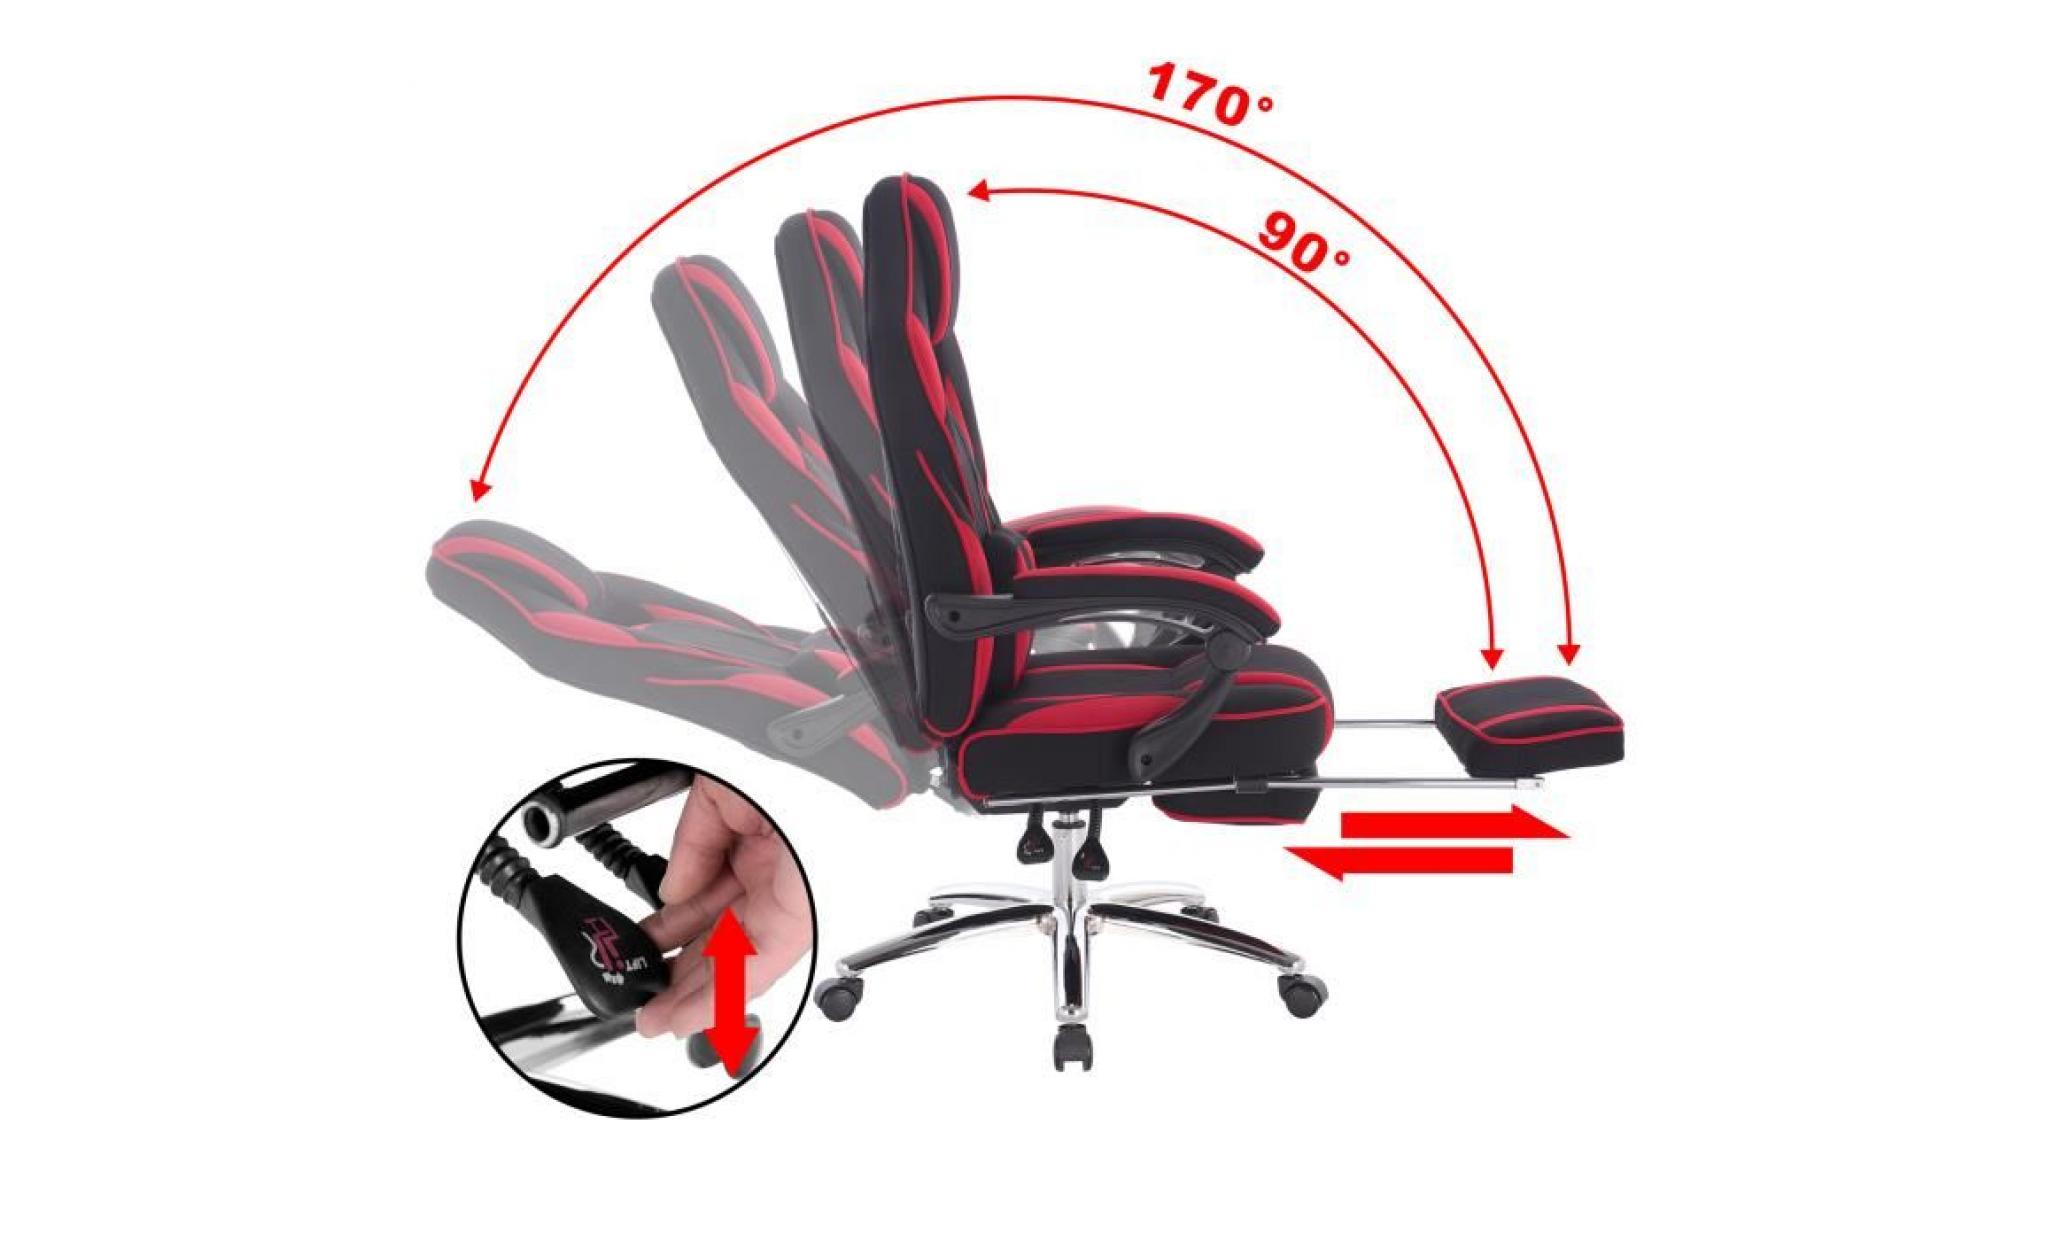 woltu 1 x chaise de bureau, fauteuil de bureau en similicuir avec repose pieds, hauteur réglable, noir+blanc pas cher